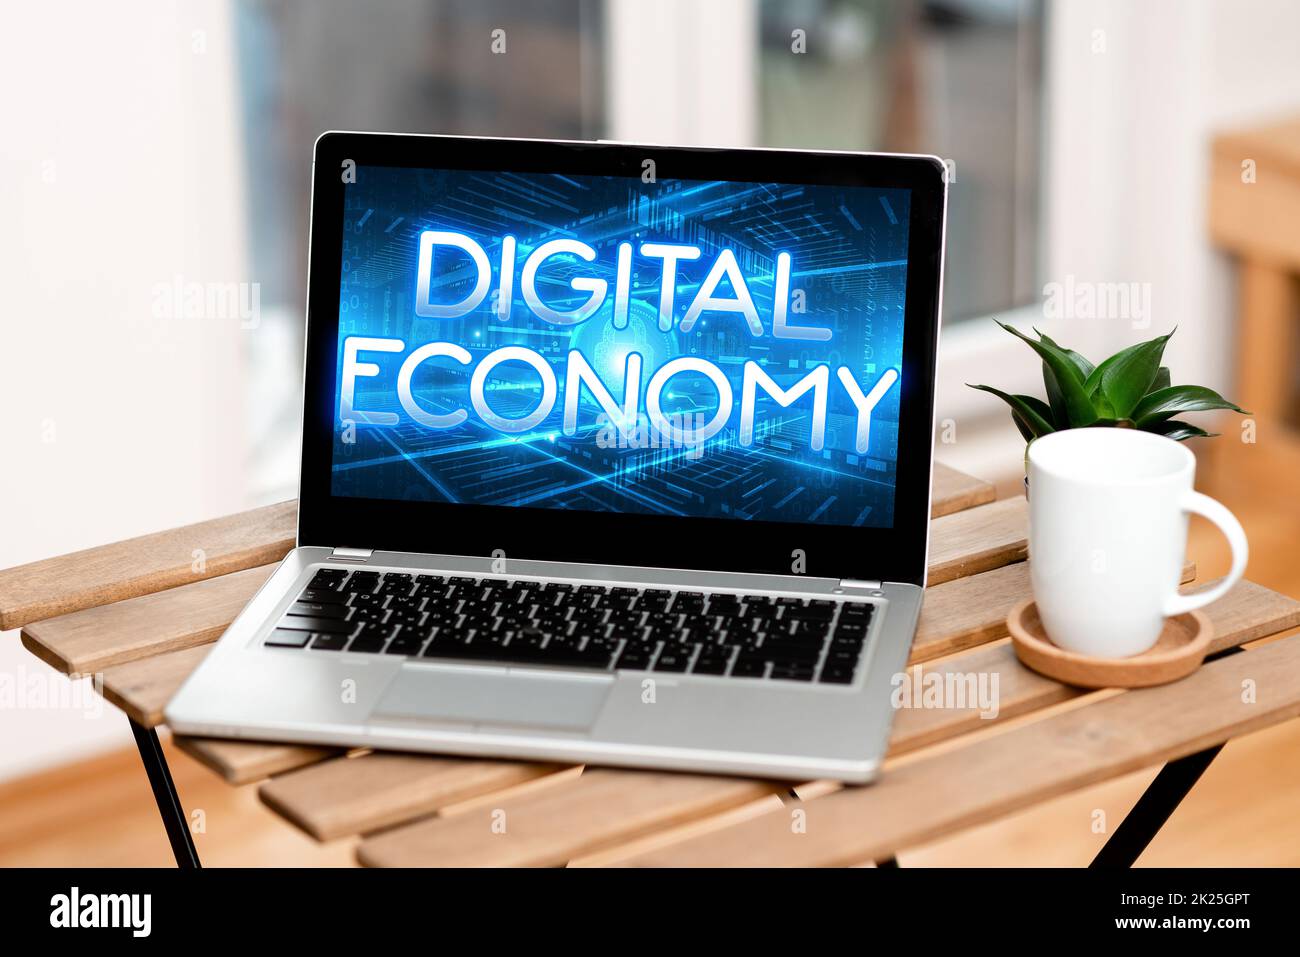 Textzeichen für die digitale Wirtschaft. Geschäftsansatz weltweites Netzwerk von wirtschaftlichen Aktivitäten und Technologien Laptop auf einem Tisch neben Kaffeetasse und Pflanze Arbeitsablauf zeigen. Stockfoto